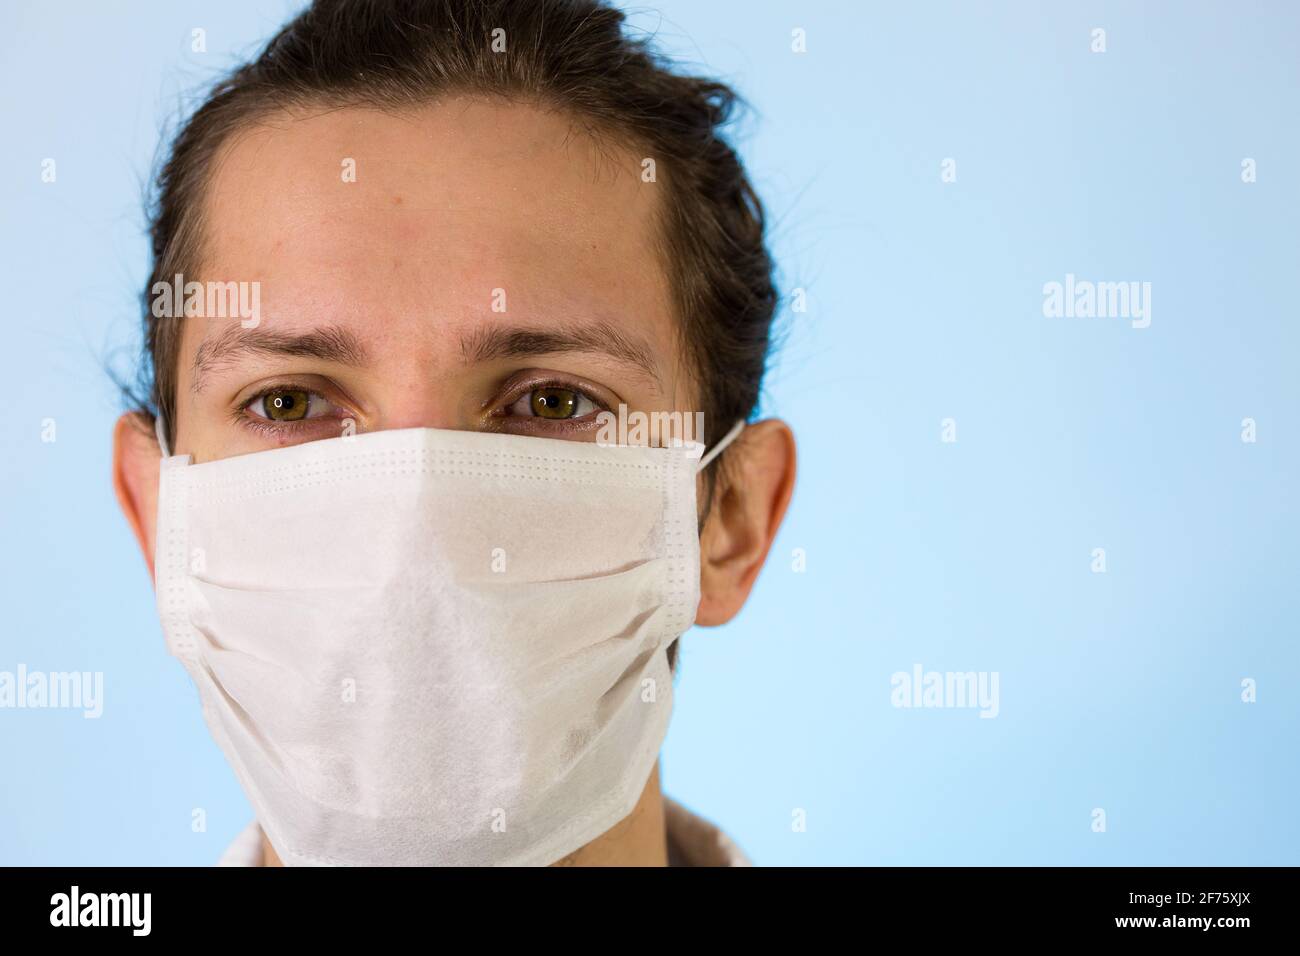 Un maschio adulto vestito con un camice da laboratorio bianco con una maschera protettiva sul viso. Pronto a lavorare in un ambiente pulito o in laboratorio Foto Stock